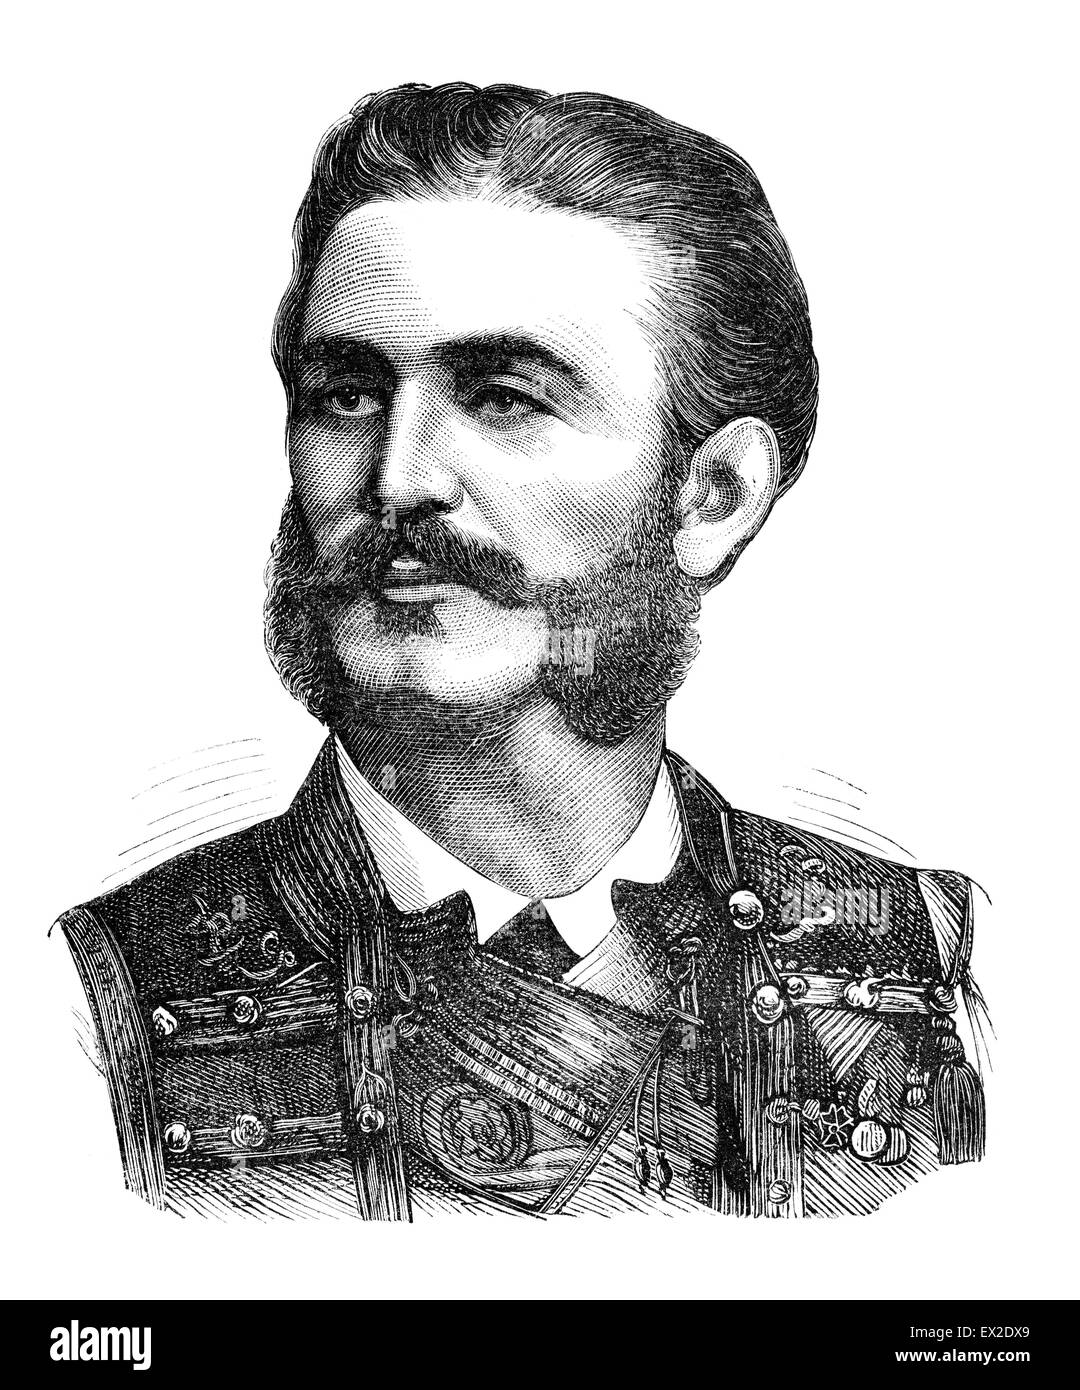 Nicola I Mirkov Petrovich-Nyegosh (1841-1921) è stato il dominatore del Montenegro da 1860 a 1918. Incisione da magazine Forr och Foto Stock